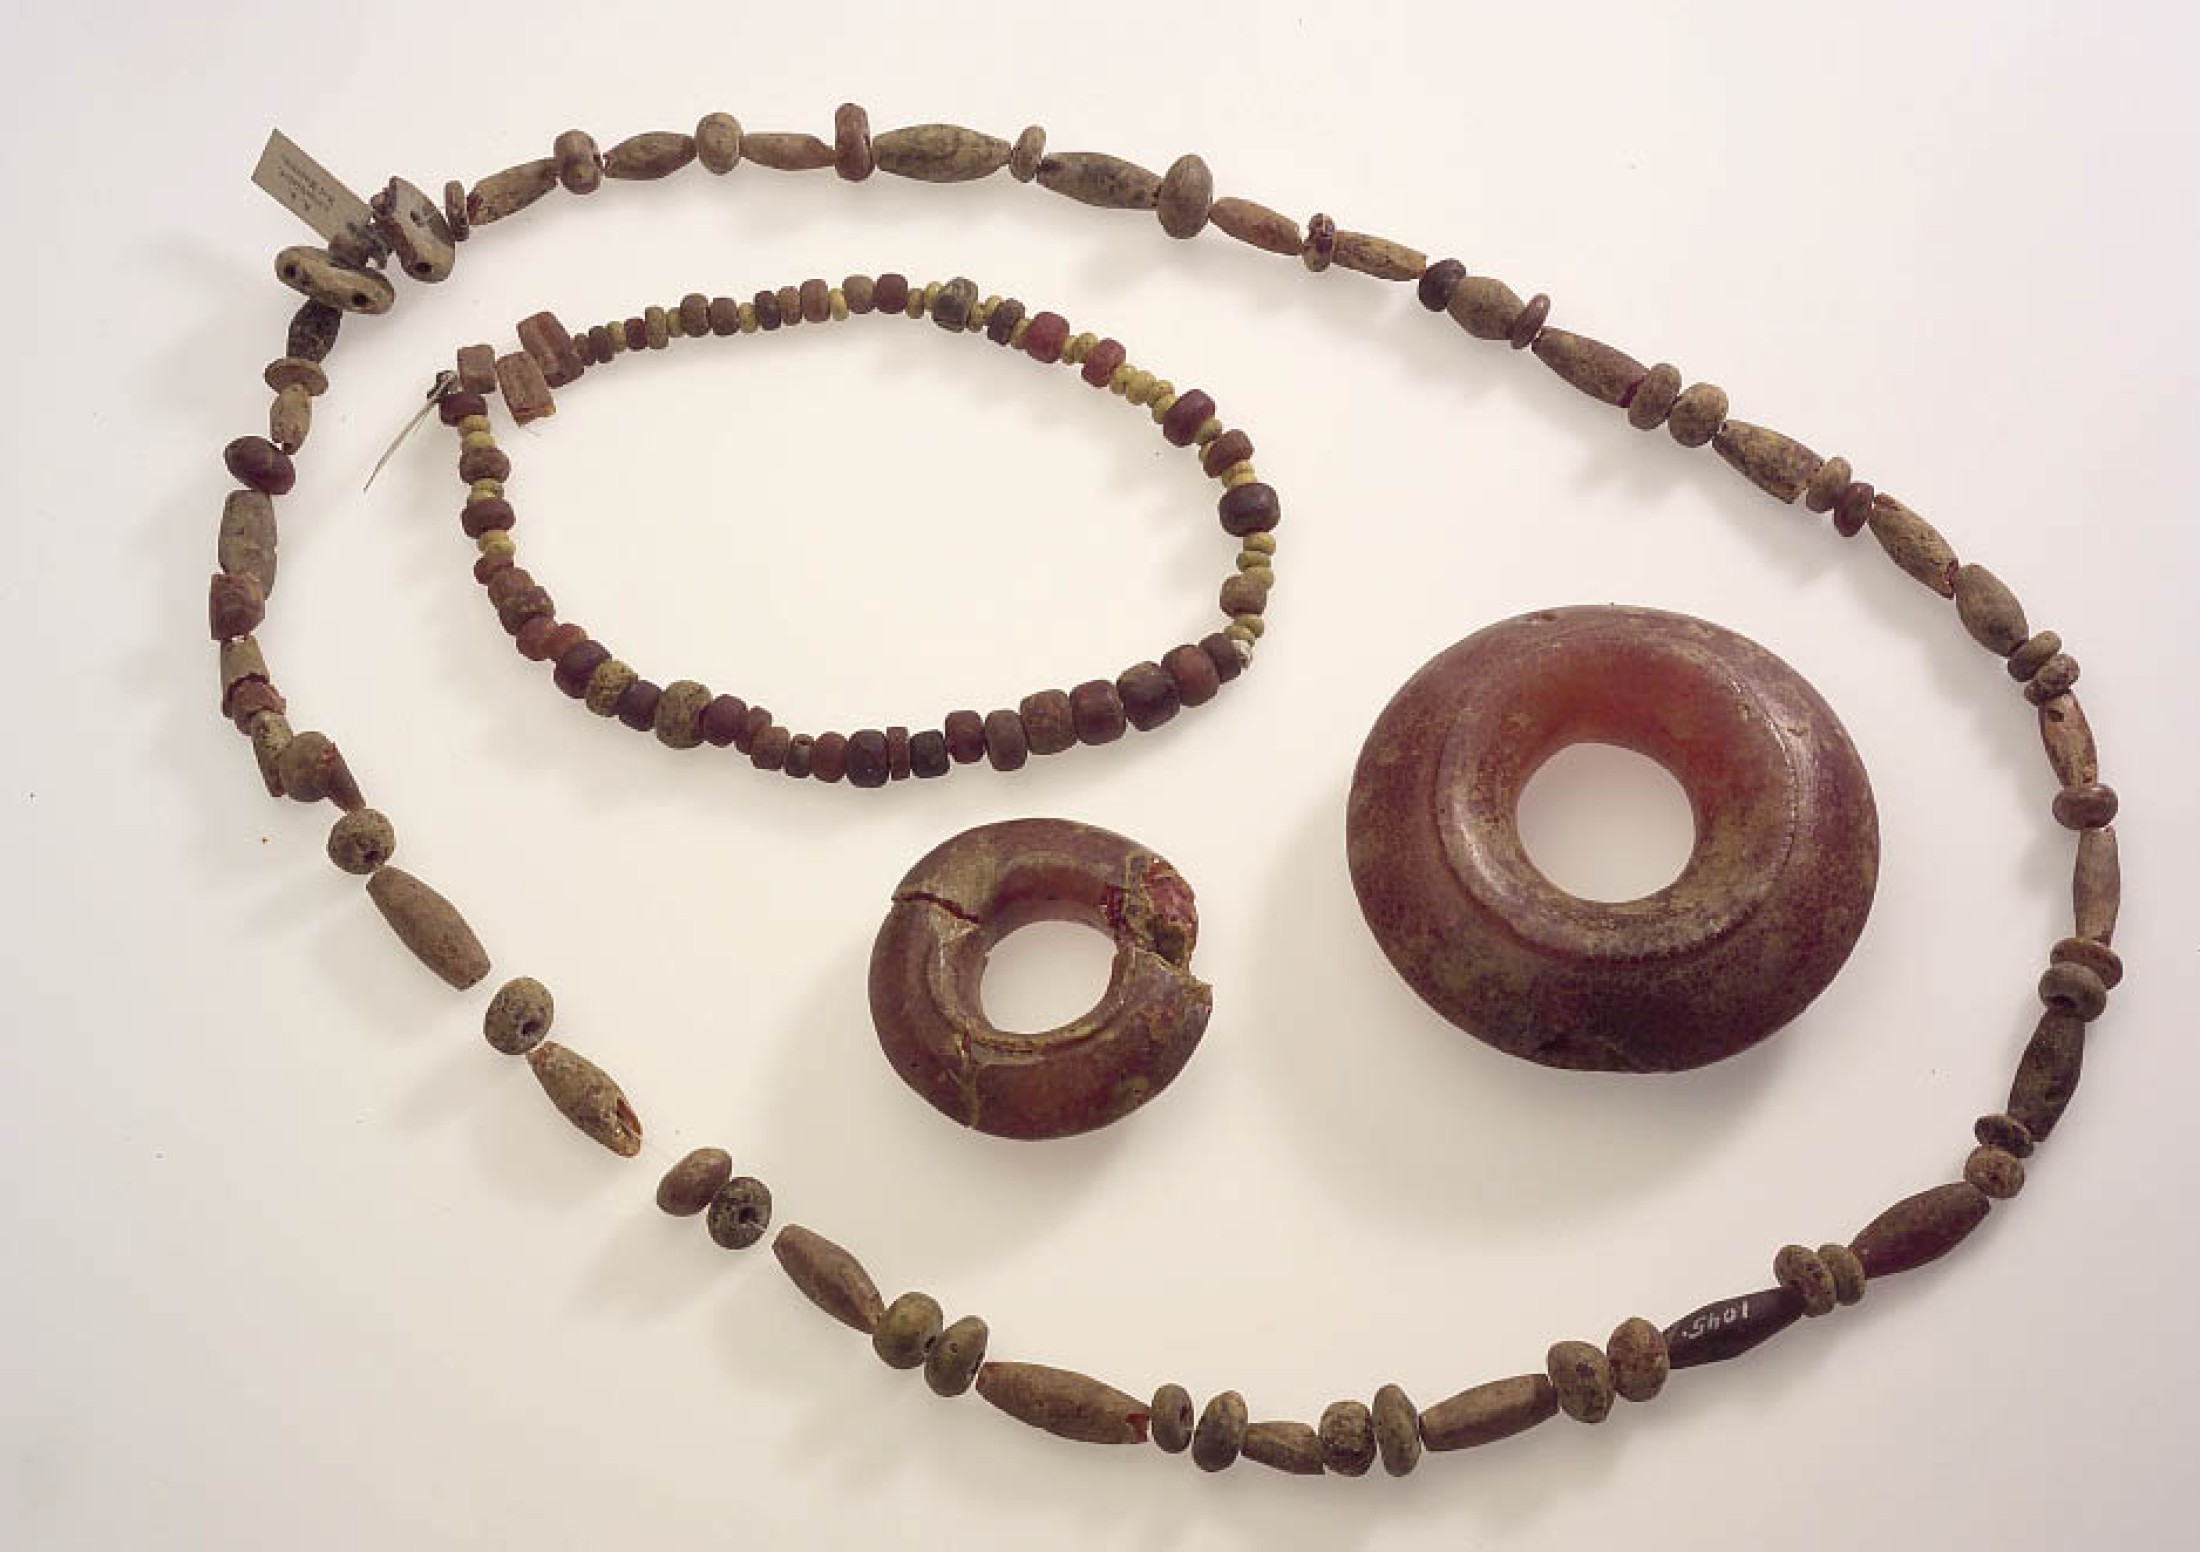 : Schmuckgegenstände aus Bernstein, wie Perlenketten und Ringe, als Beispiele für besonders luxuriöse Grabbeigaben. (Foto: Bibracte - NHM Wien)